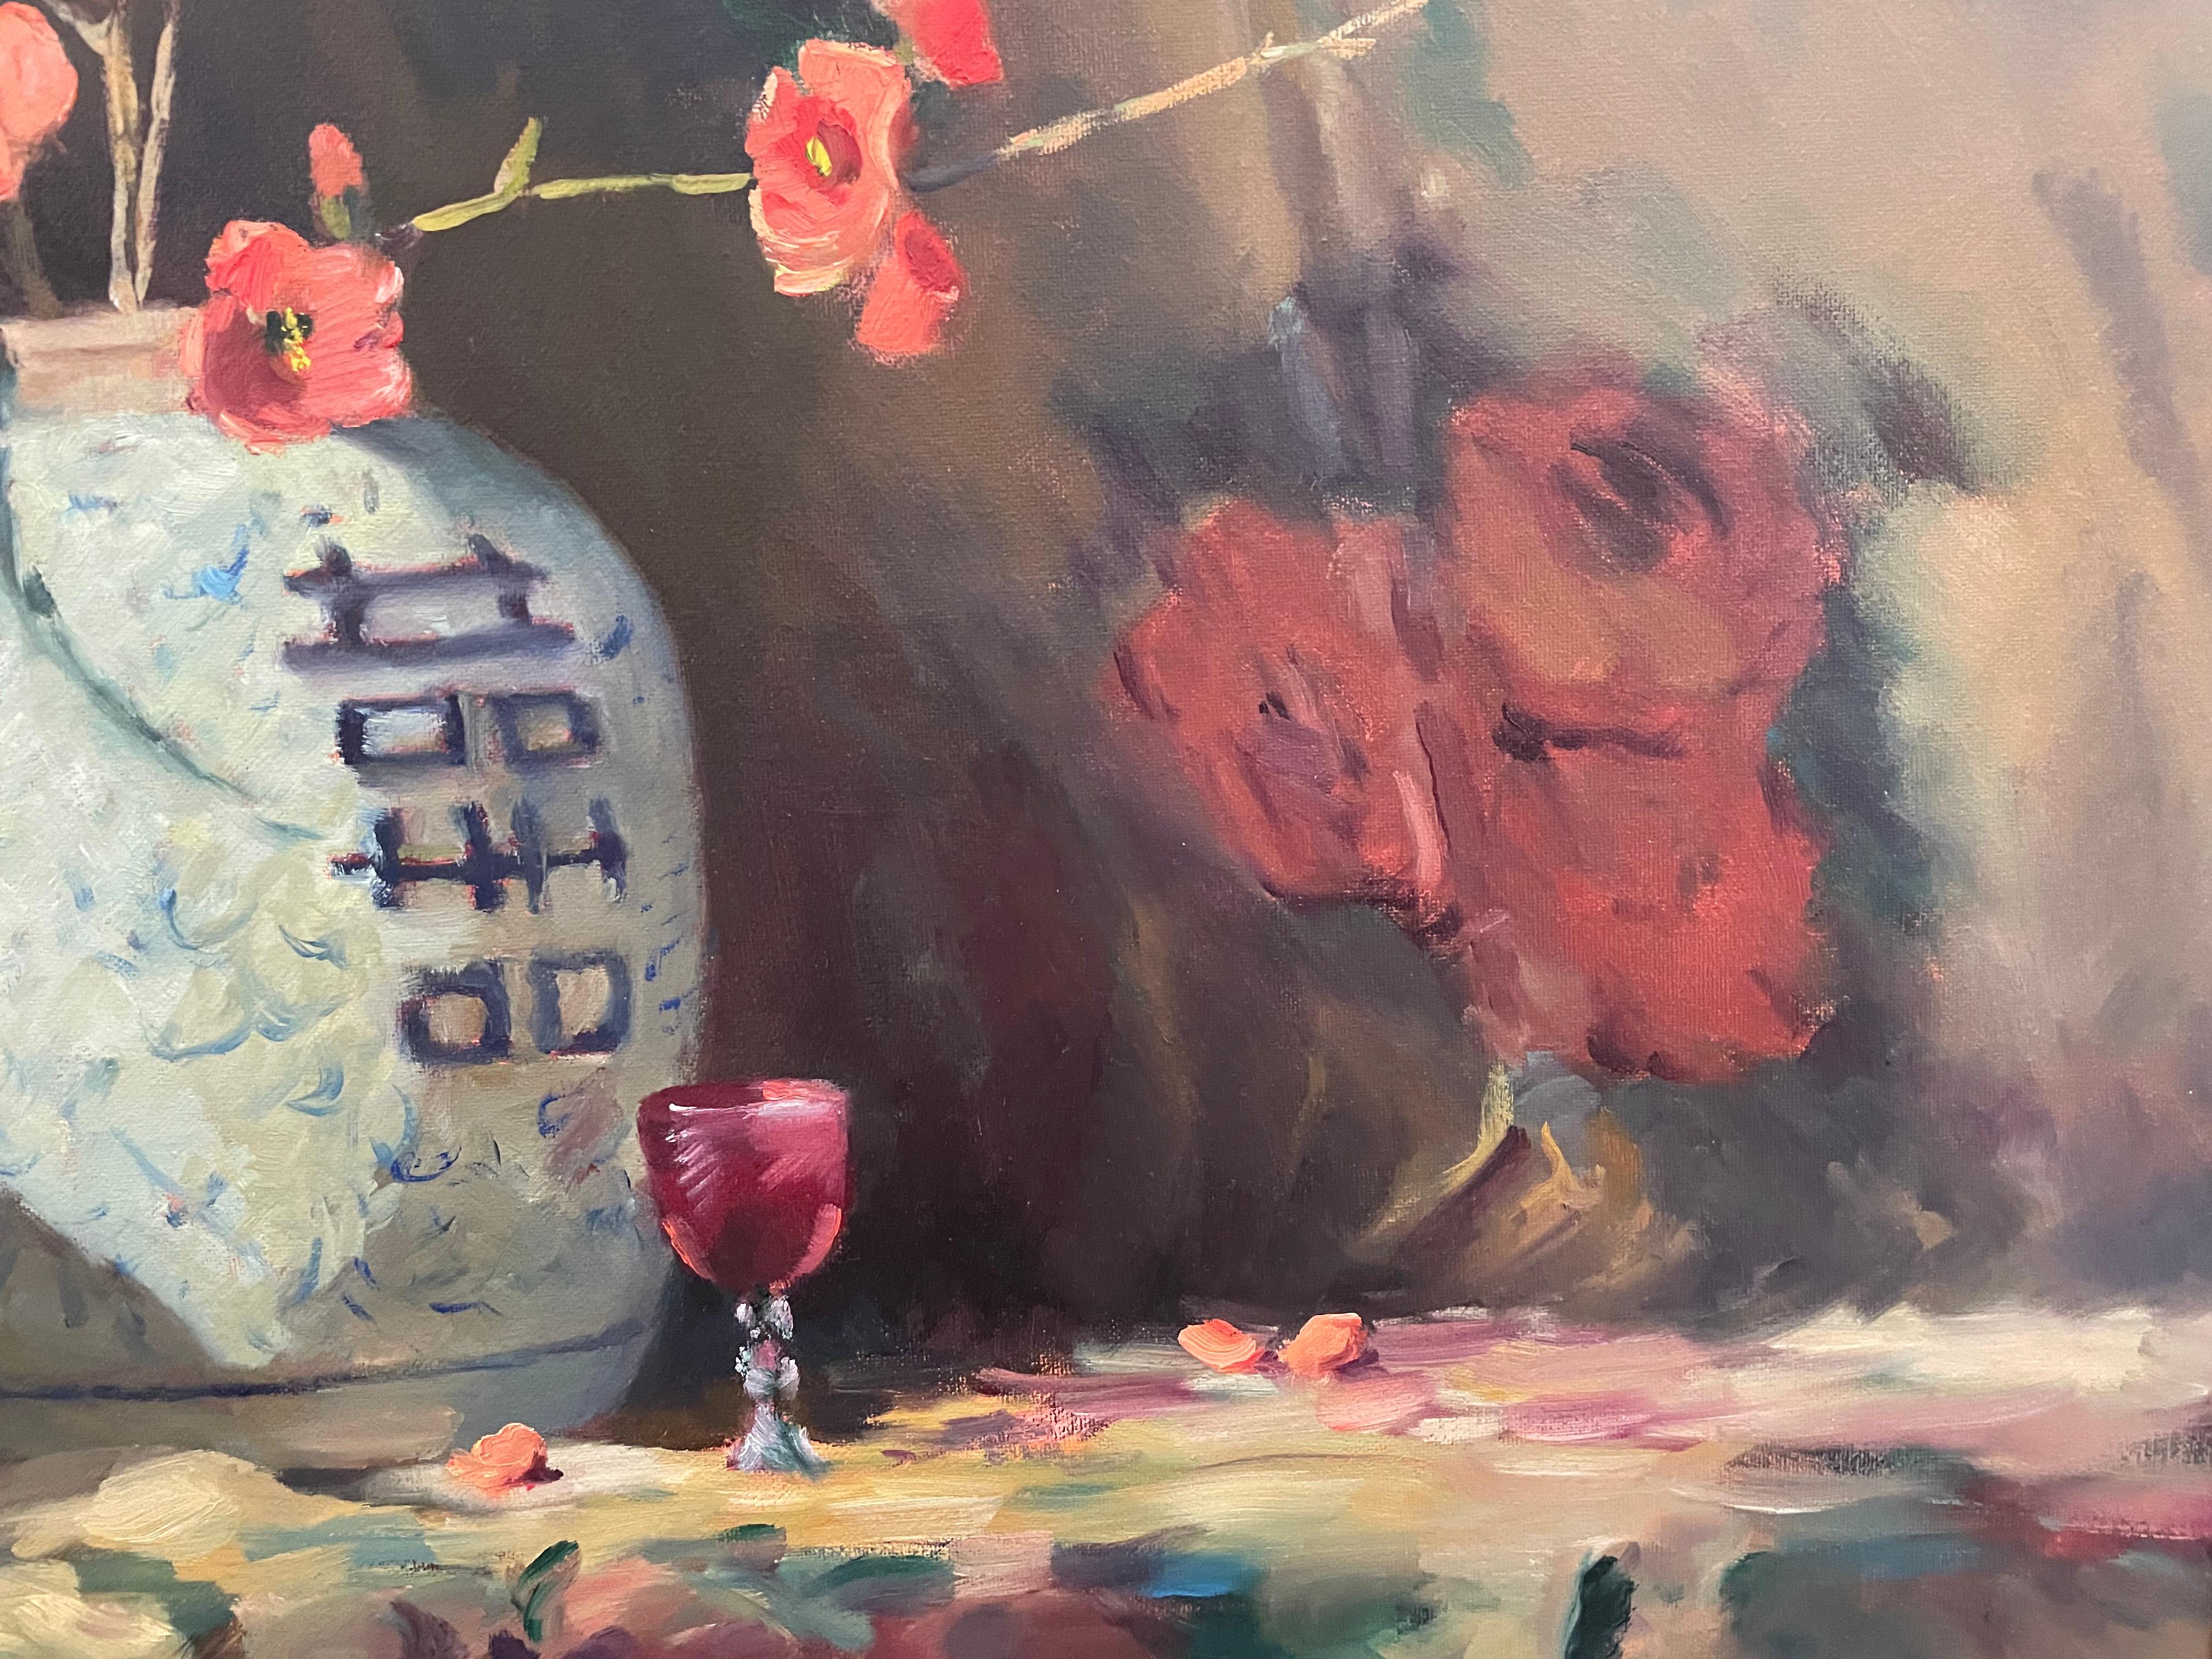 Jacqueline Fowler, Still Life With Japonica, Oil On Canvas - une belle œuvre décorative représentant des fleurs de japonica dans un vase japonais.

Jacqueline Fowler est née en Angleterre en 1945. Elle vit et travaille actuellement en Australie.